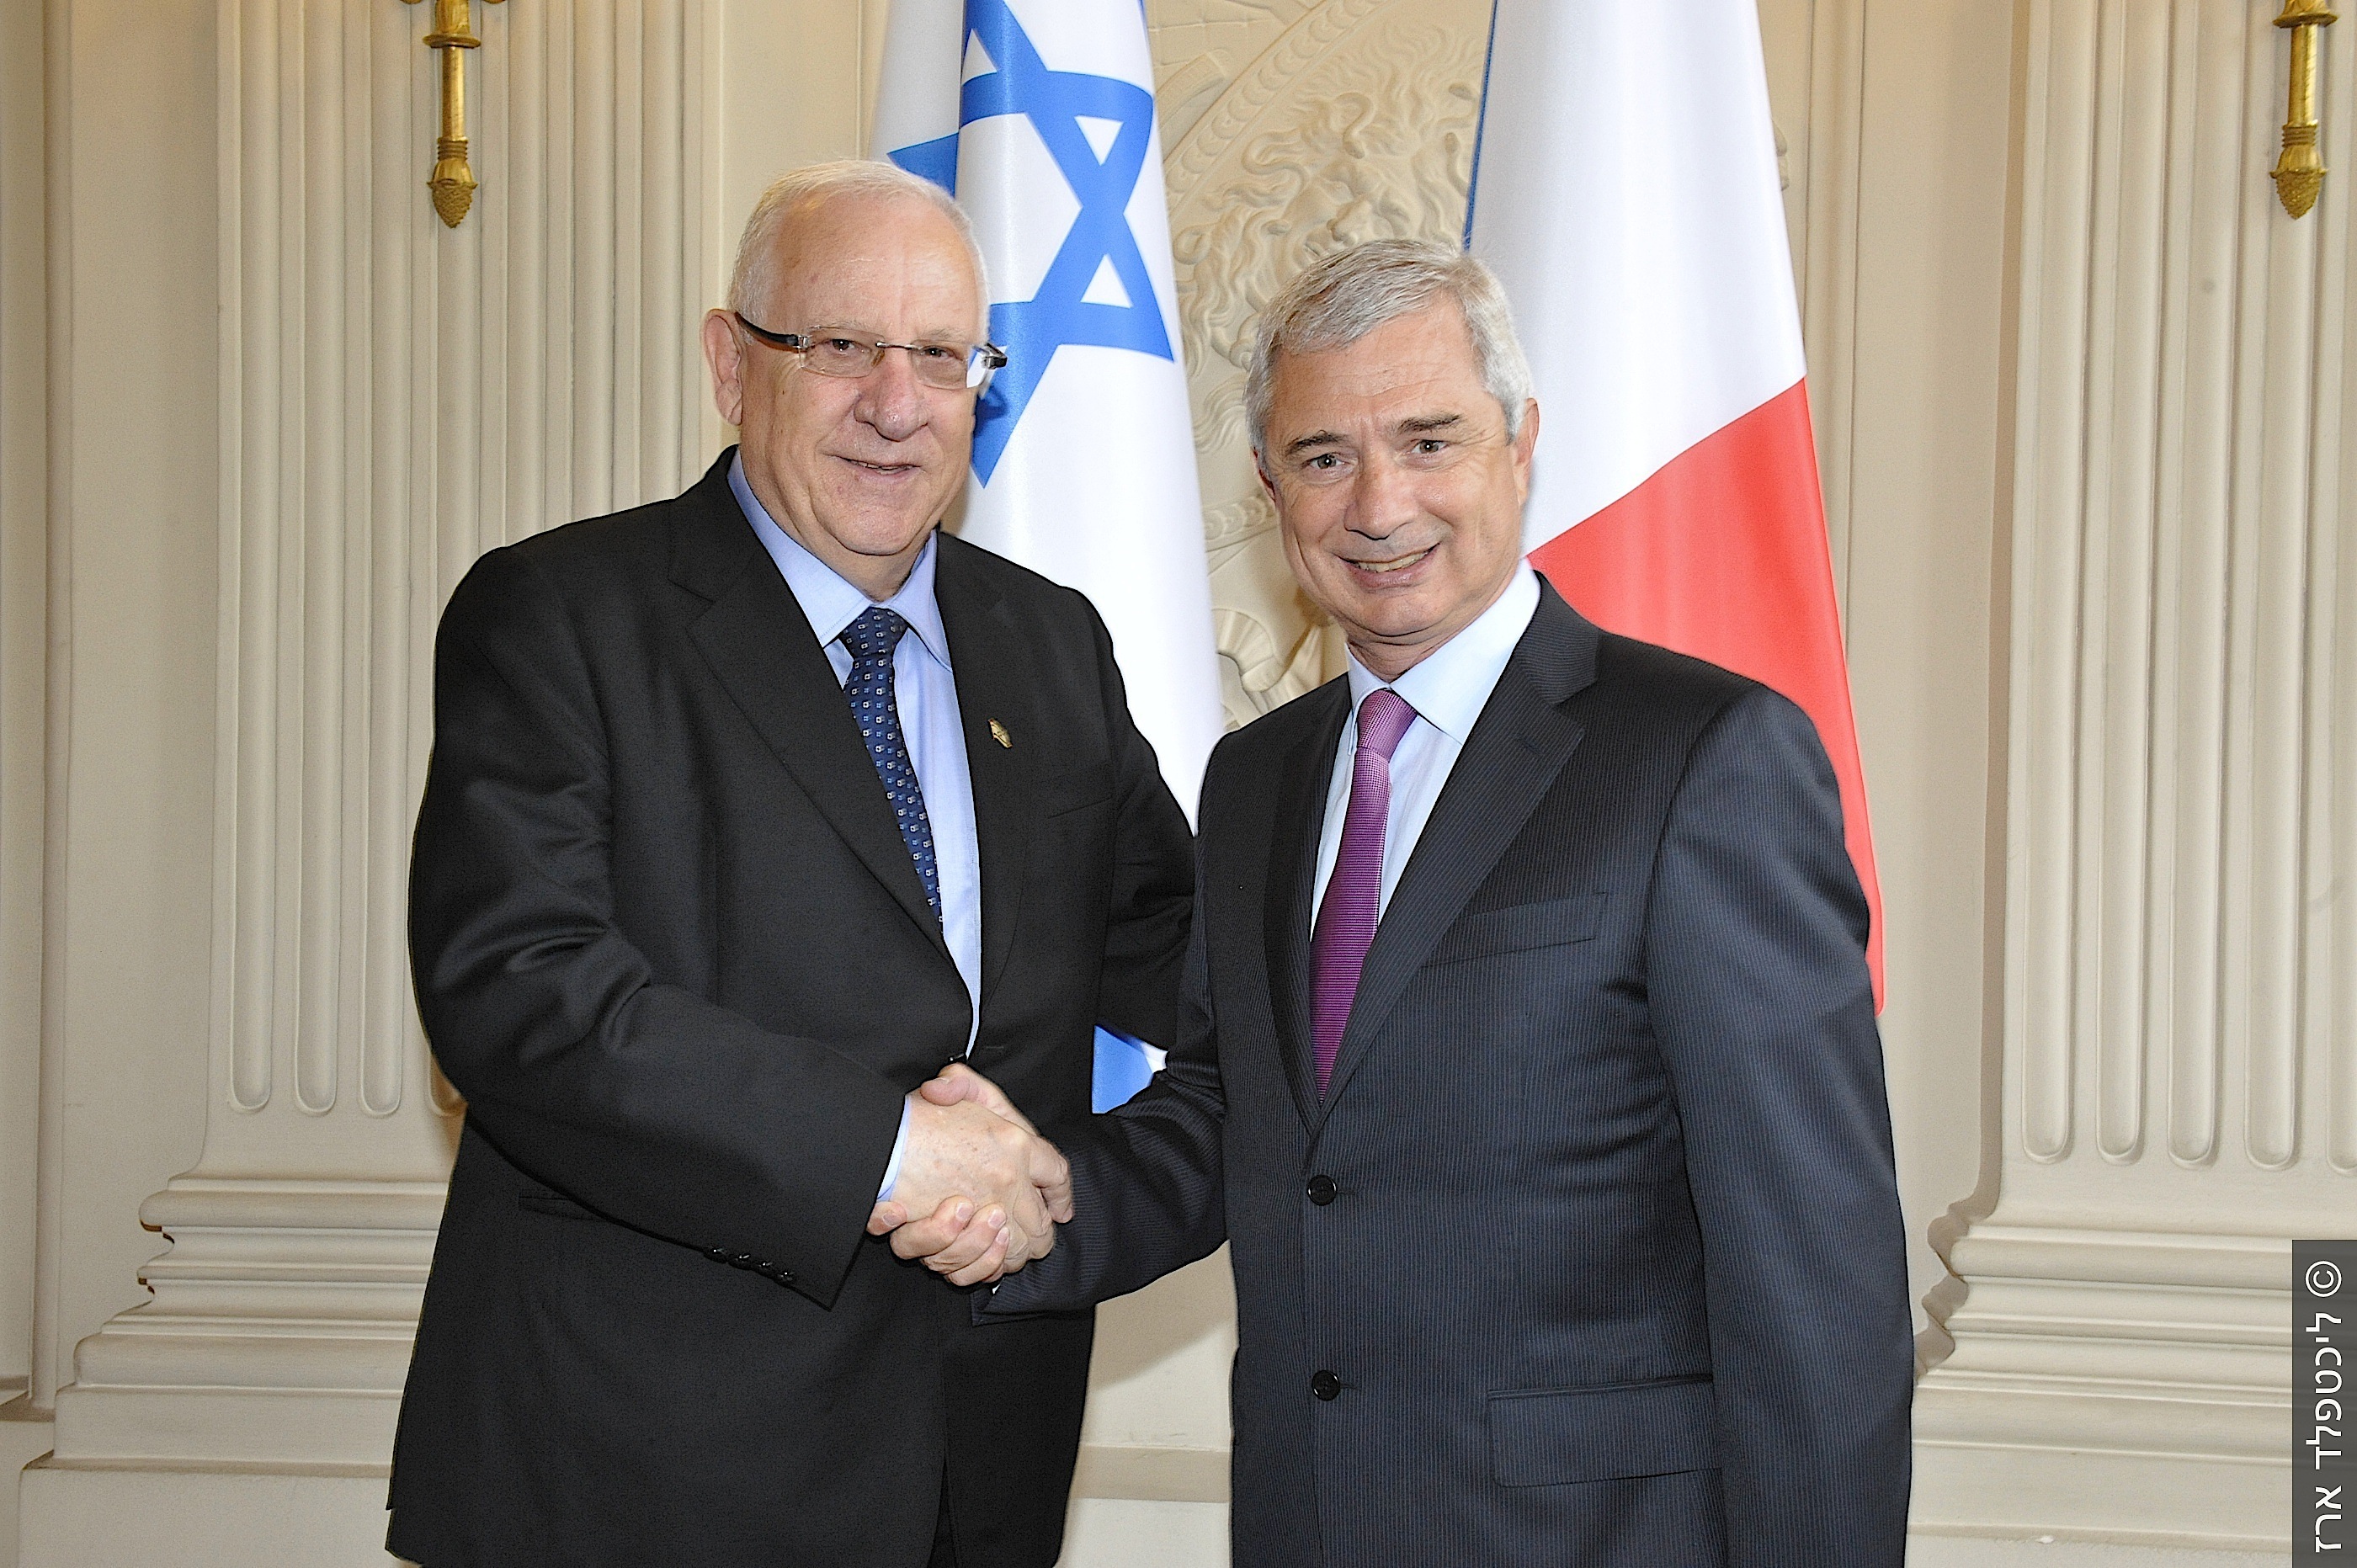 יו"ר הפרלמנט בצרפת: אם הרש"פ תקרוס ישראל אחראית